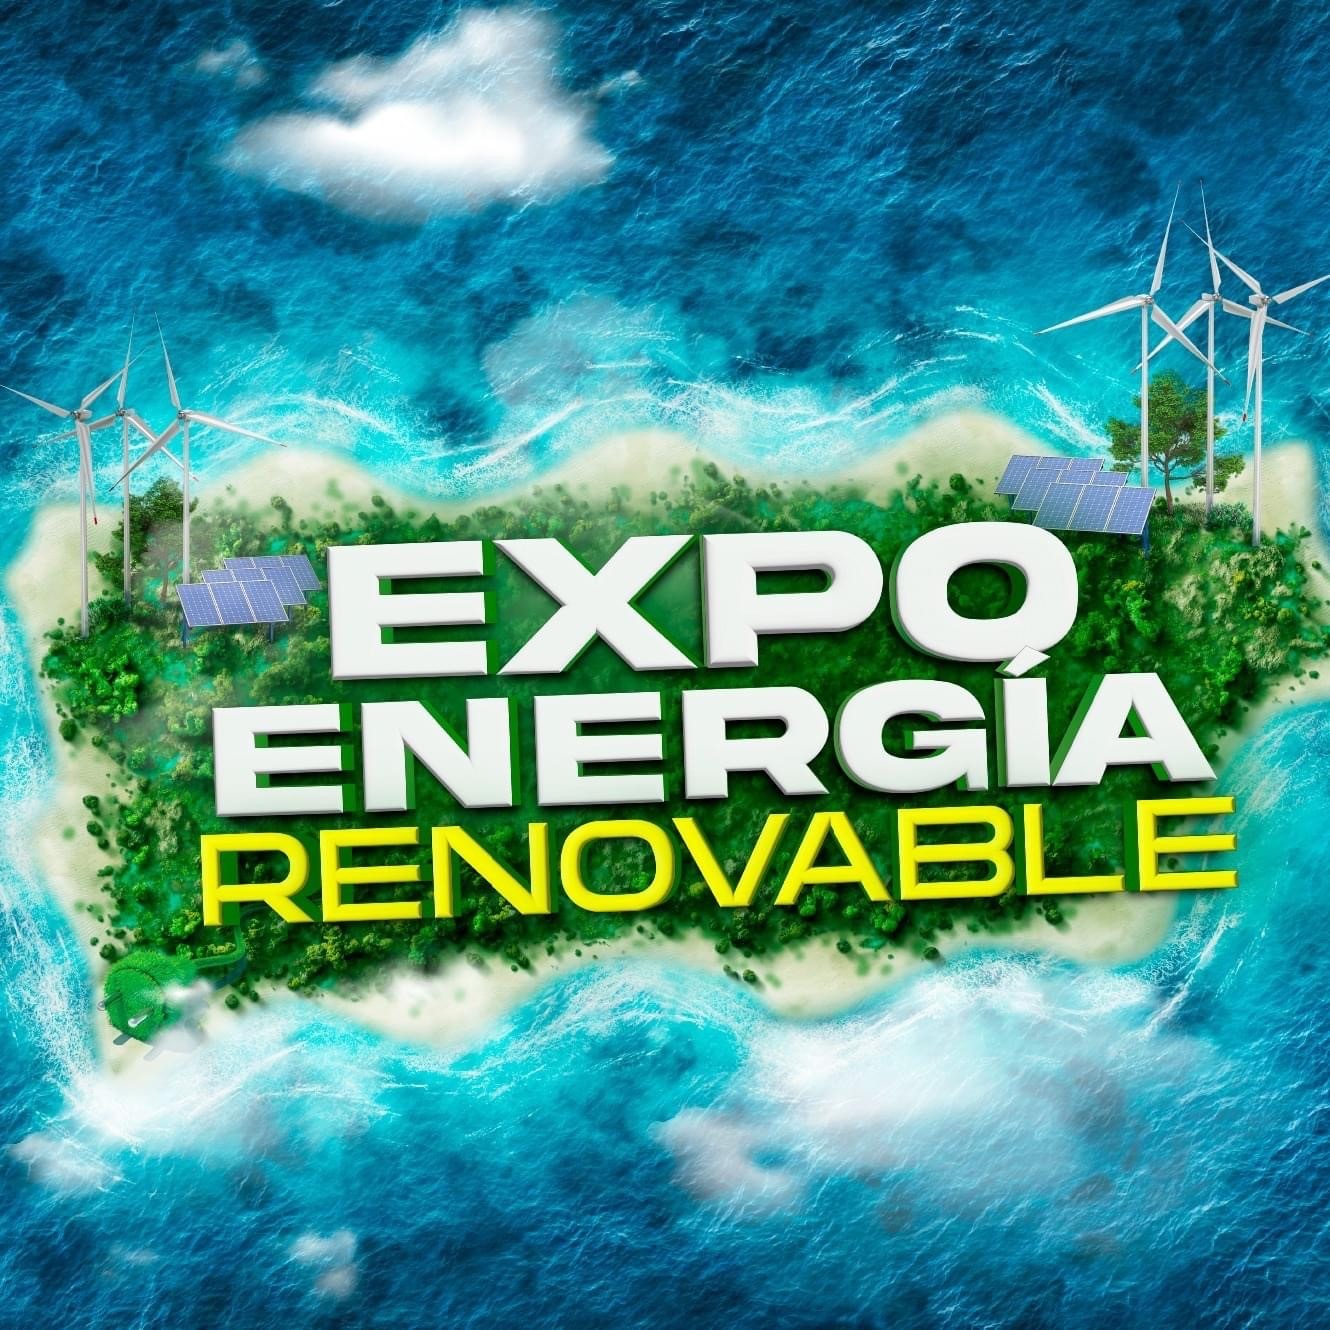 Expo Energía Renovable Puerto Rico Convention Center